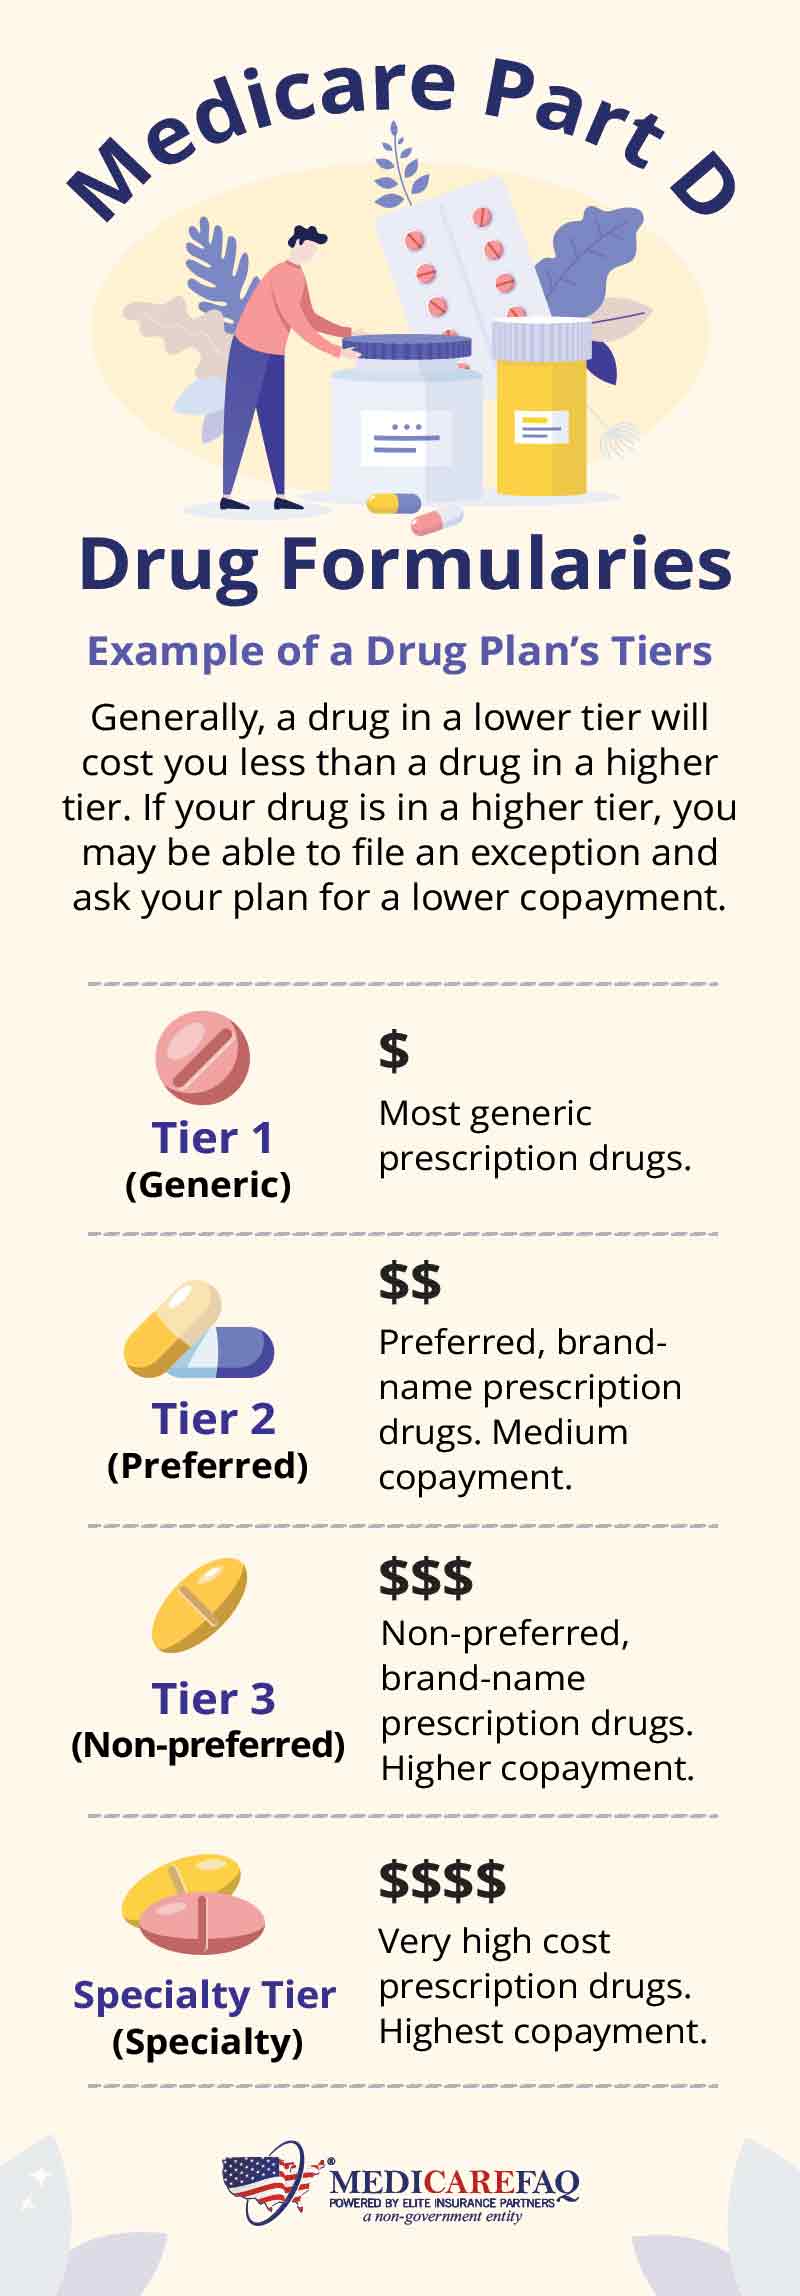 Medicare Part D drug plan formularies have 4 tier options.